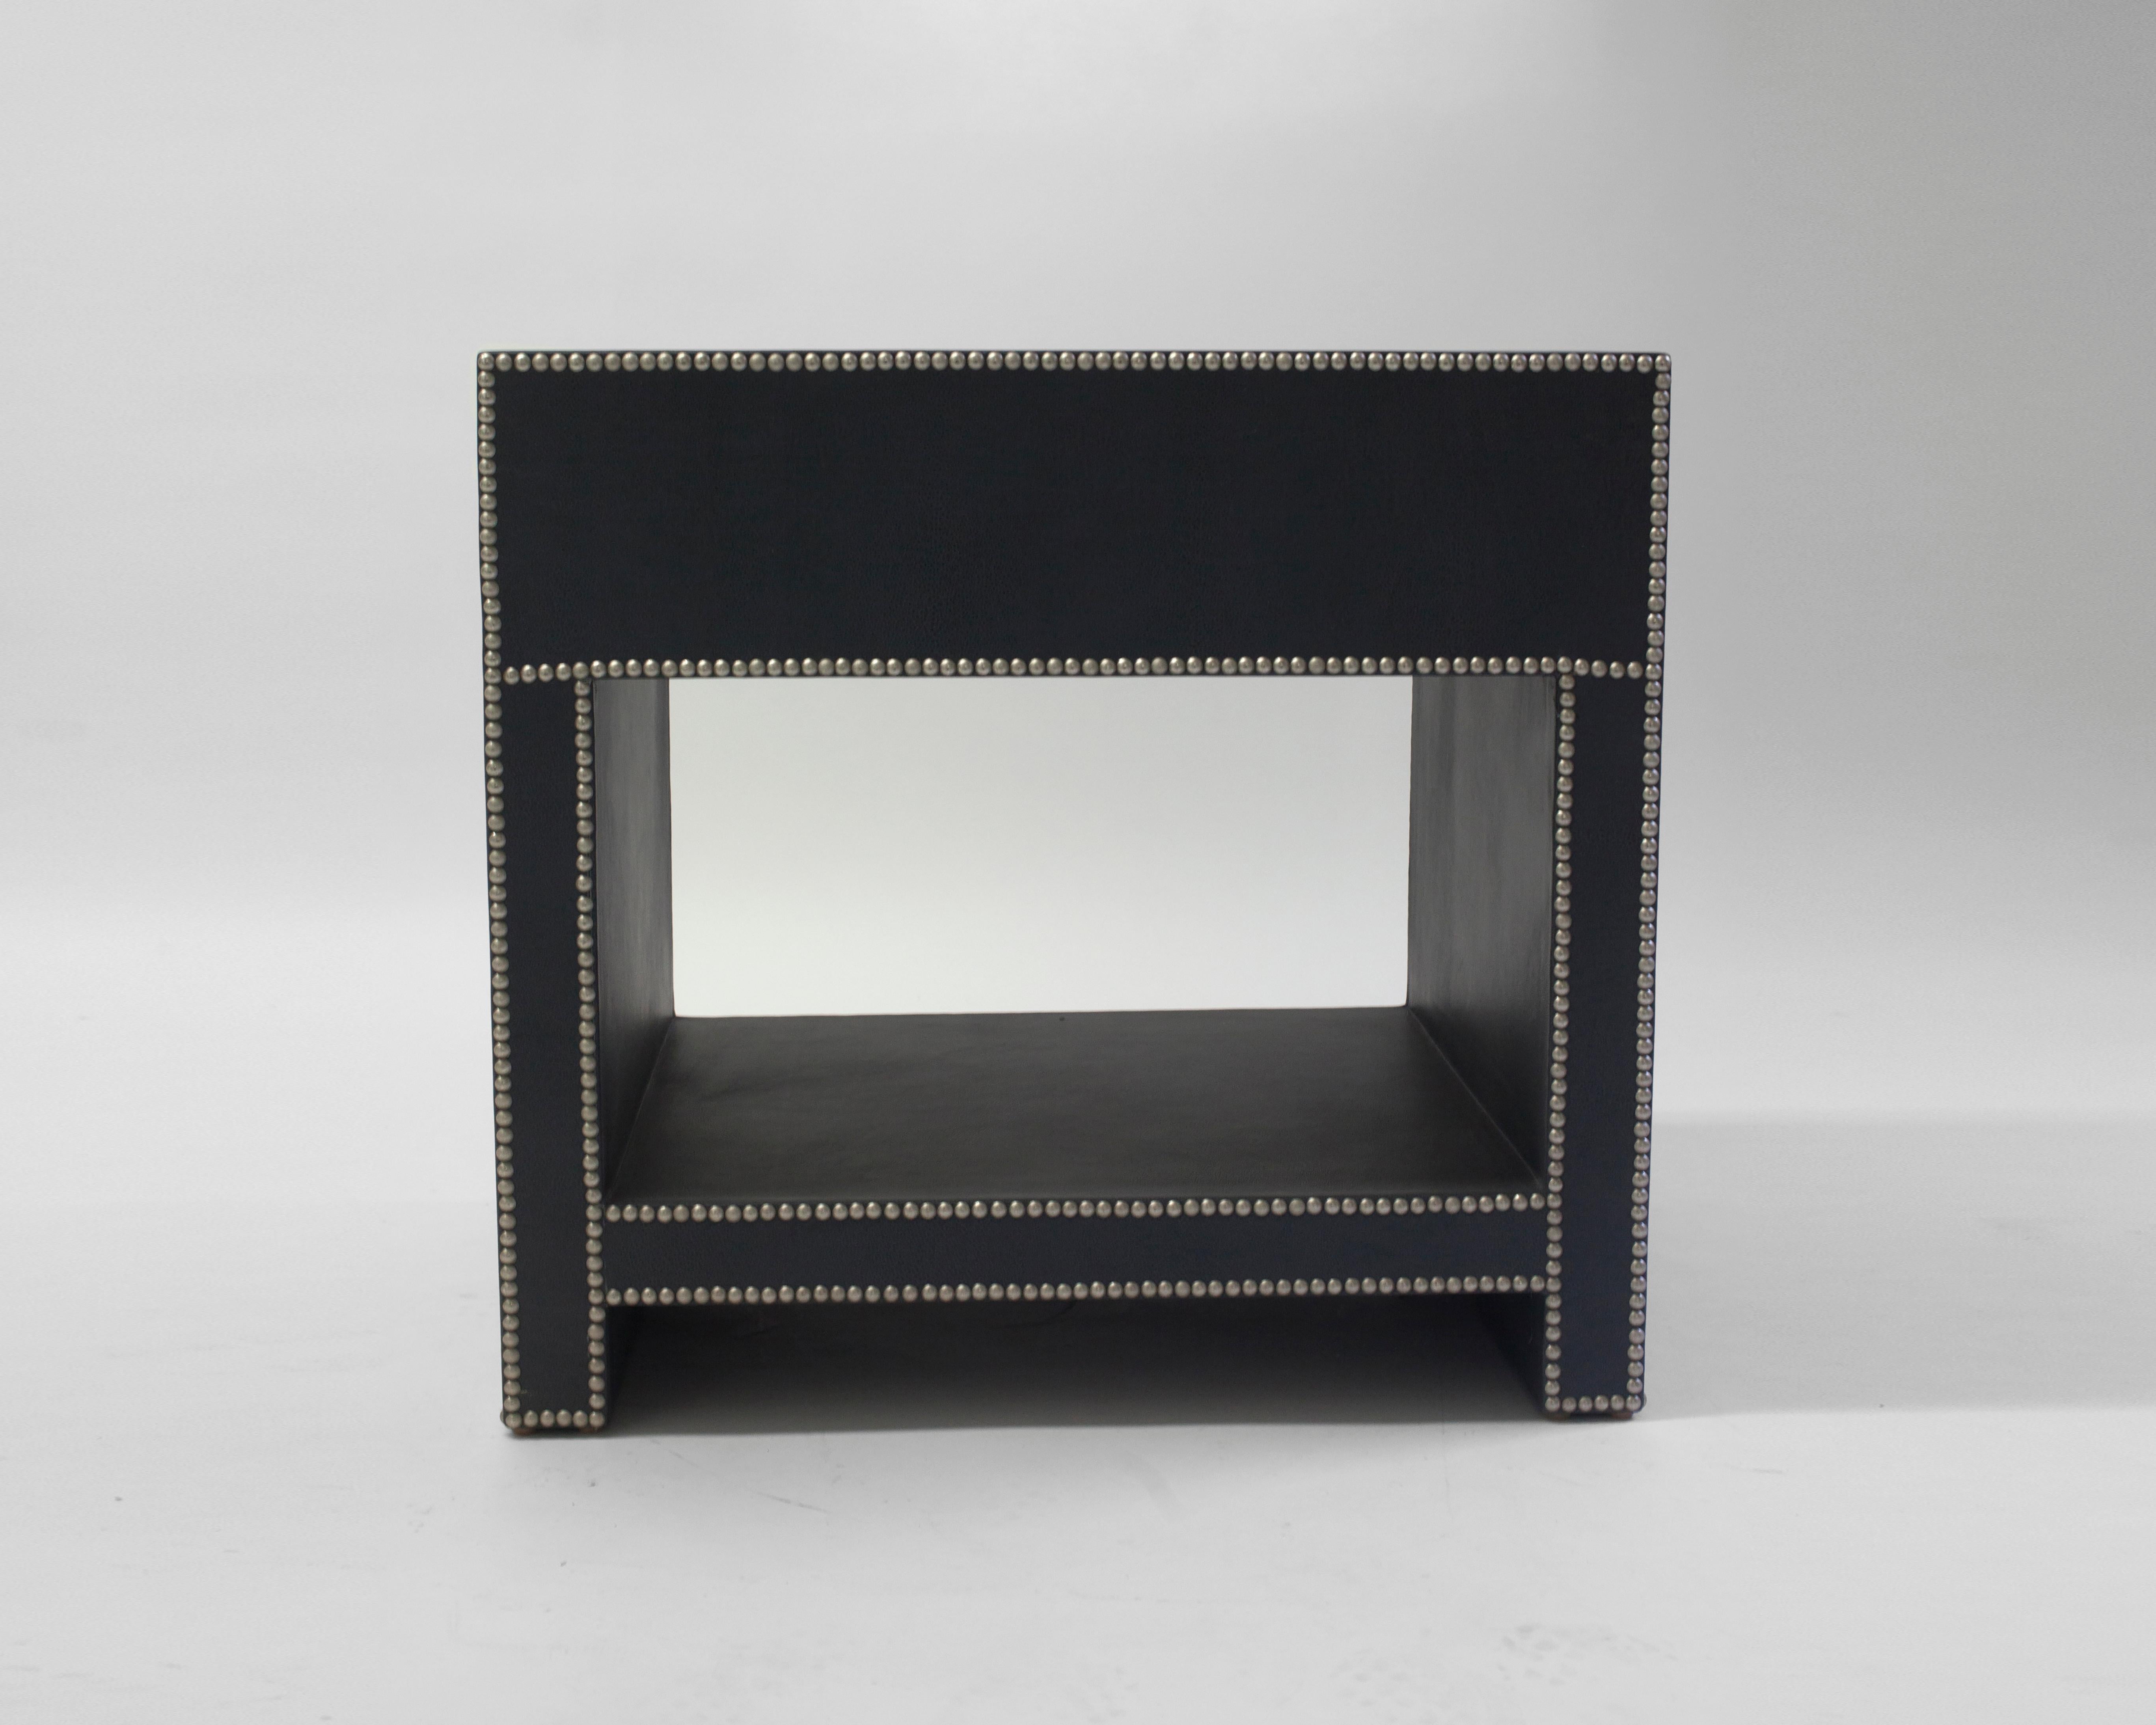 Der Keap Nachttisch von LF upholstery zeigt, dass Funktionalität auf Stil trifft. Wunderschöner, handgefertigter Holzrahmen mit Lederpolsterung und Zinnnagelverzierung. Abgebildet mit einer Schublade und einem offenen Regal zur Aufbewahrung.
DER